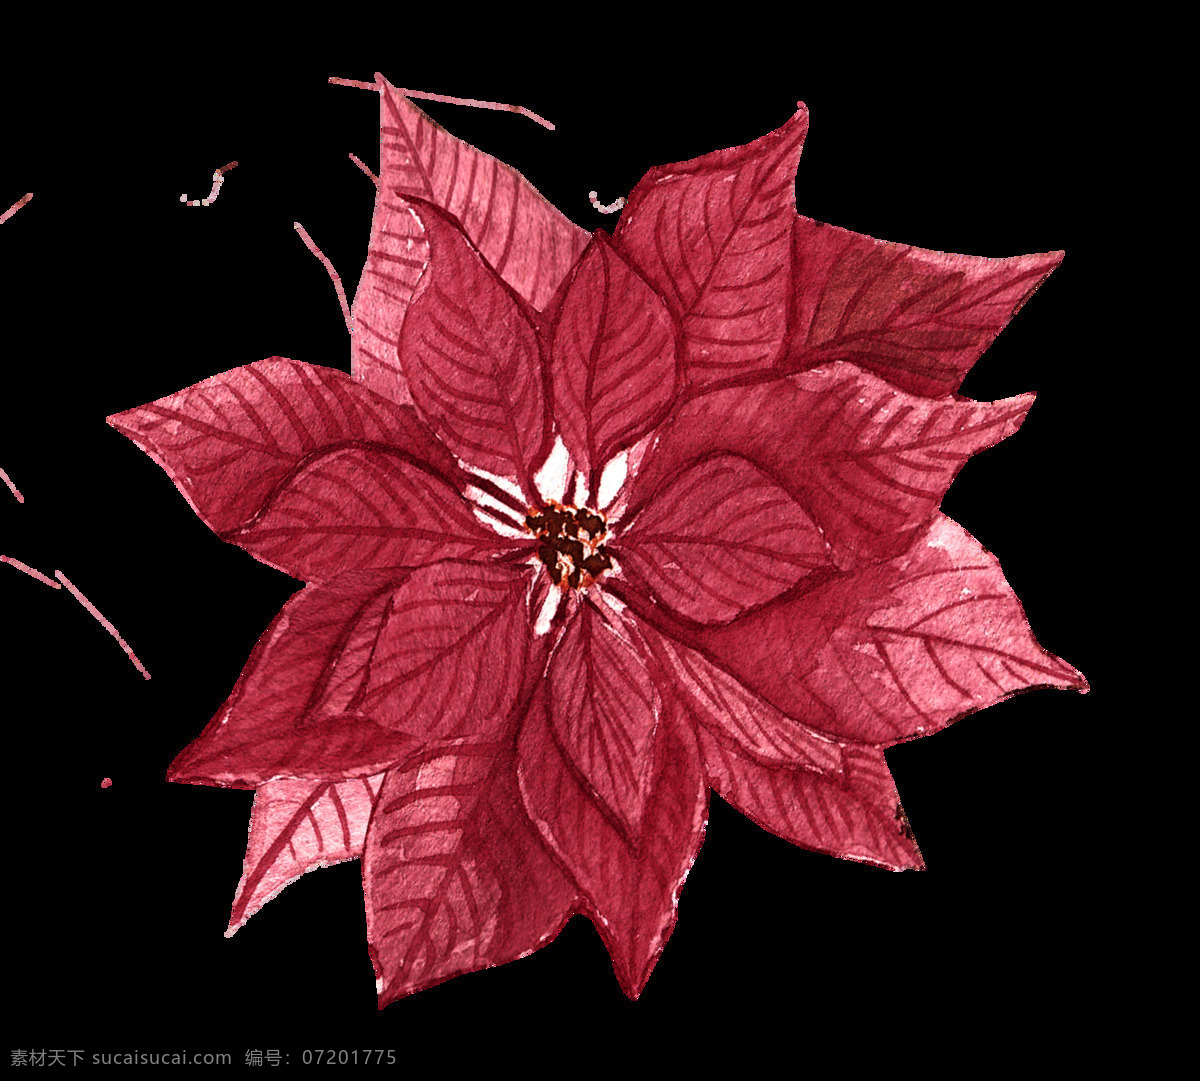 红色 枫叶 花卉 免 抠 图 卡通素材 免抠 免抠图 矢量素材